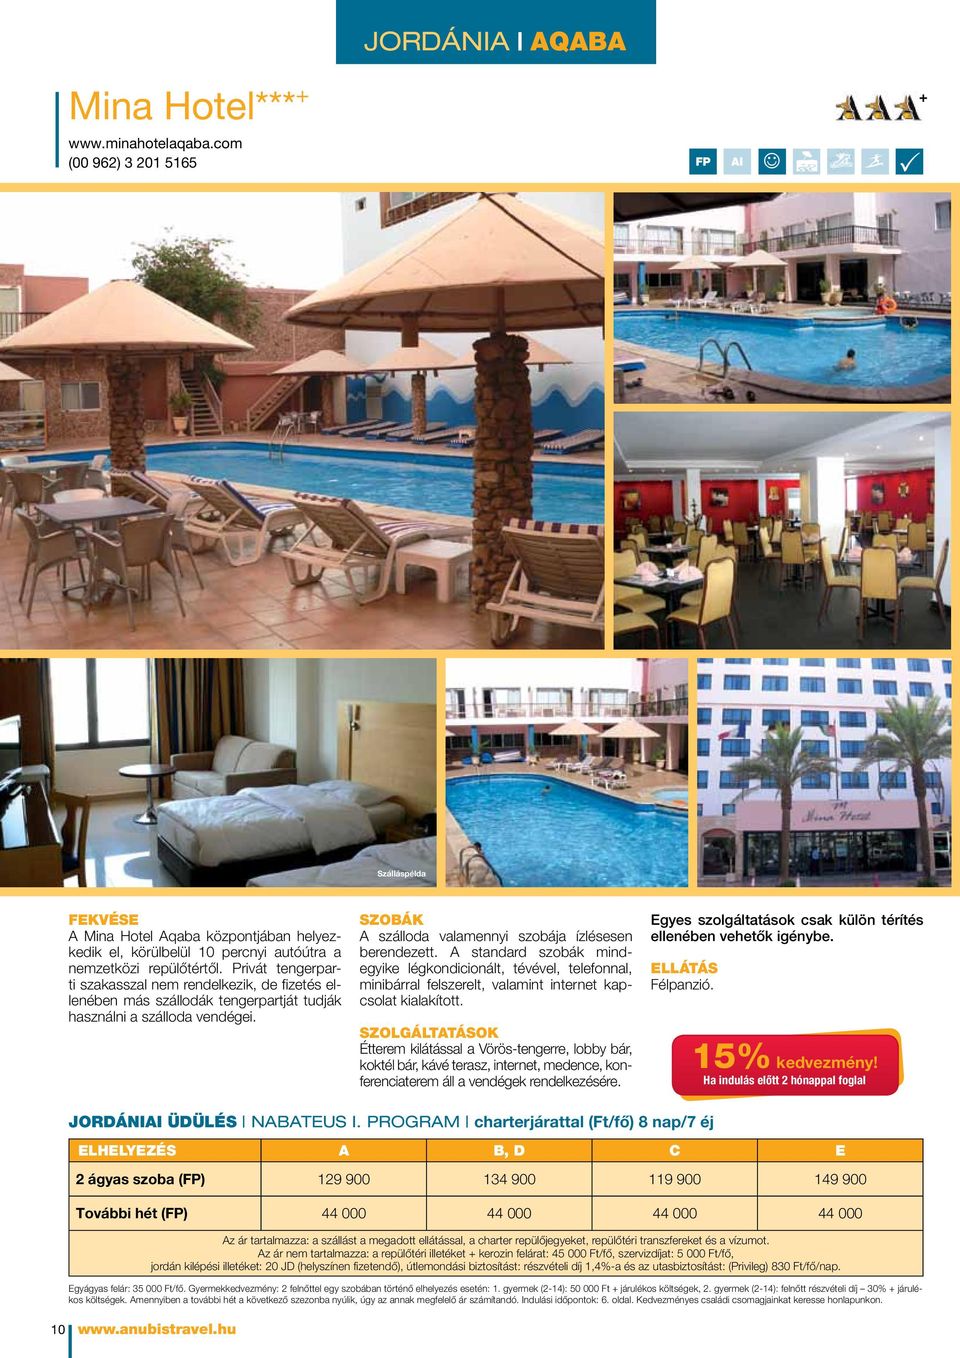 Privát tengerparti szakasszal nem rendelkezik, de fizetés ellenében más szállodák tengerpartját tudják használni a szálloda vendégei. Szobák A szálloda valamennyi szobája ízlésesen berendezett.